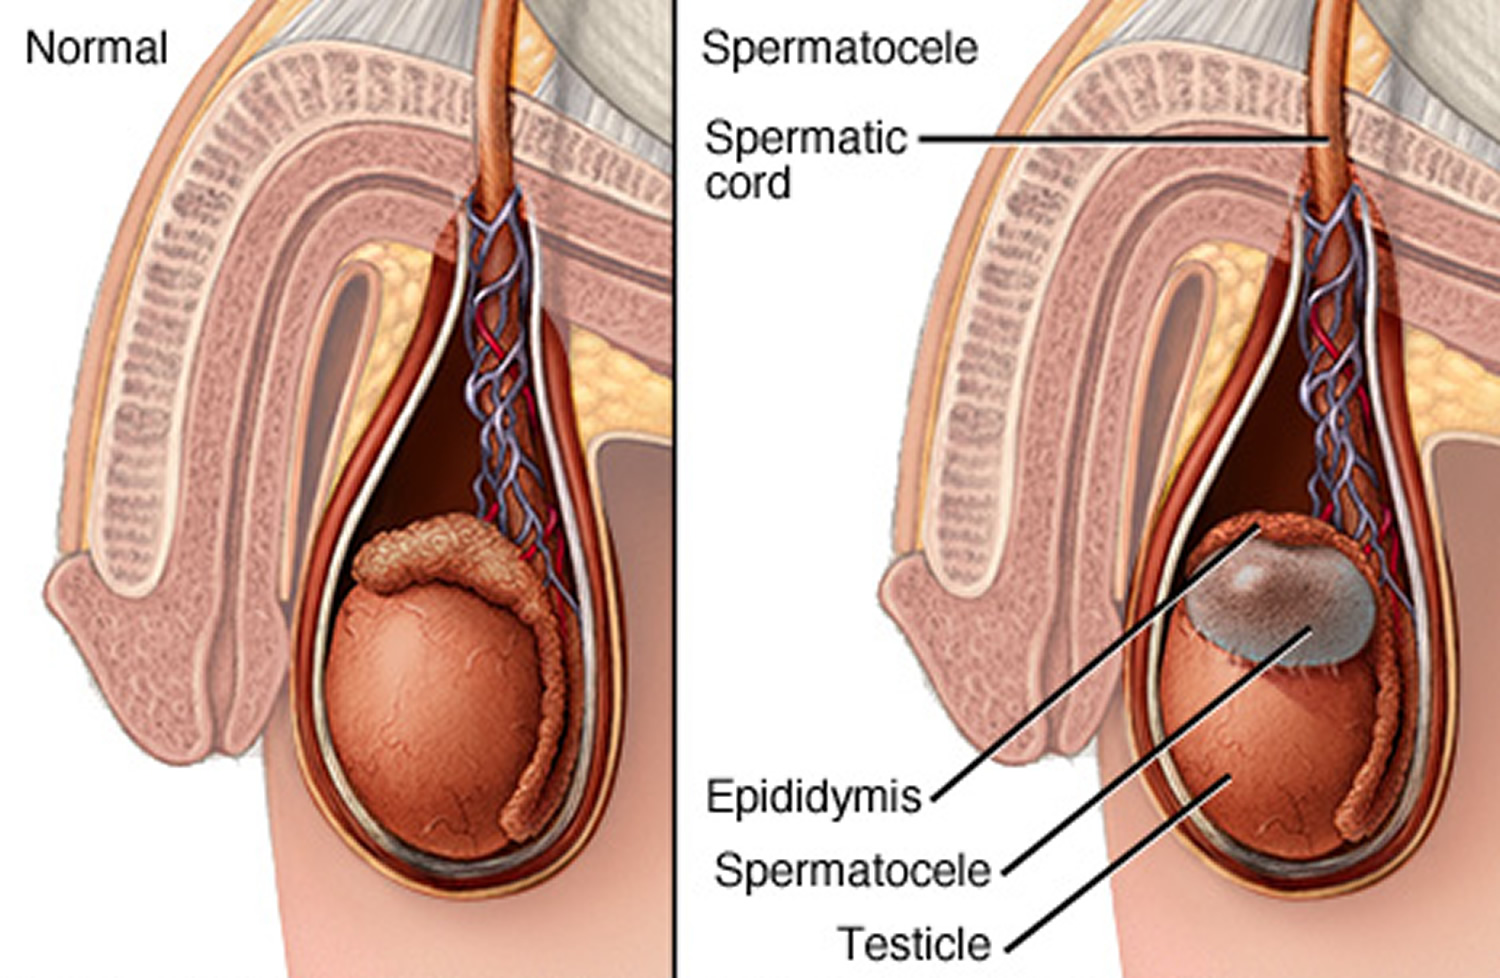 Spermatocele cyst